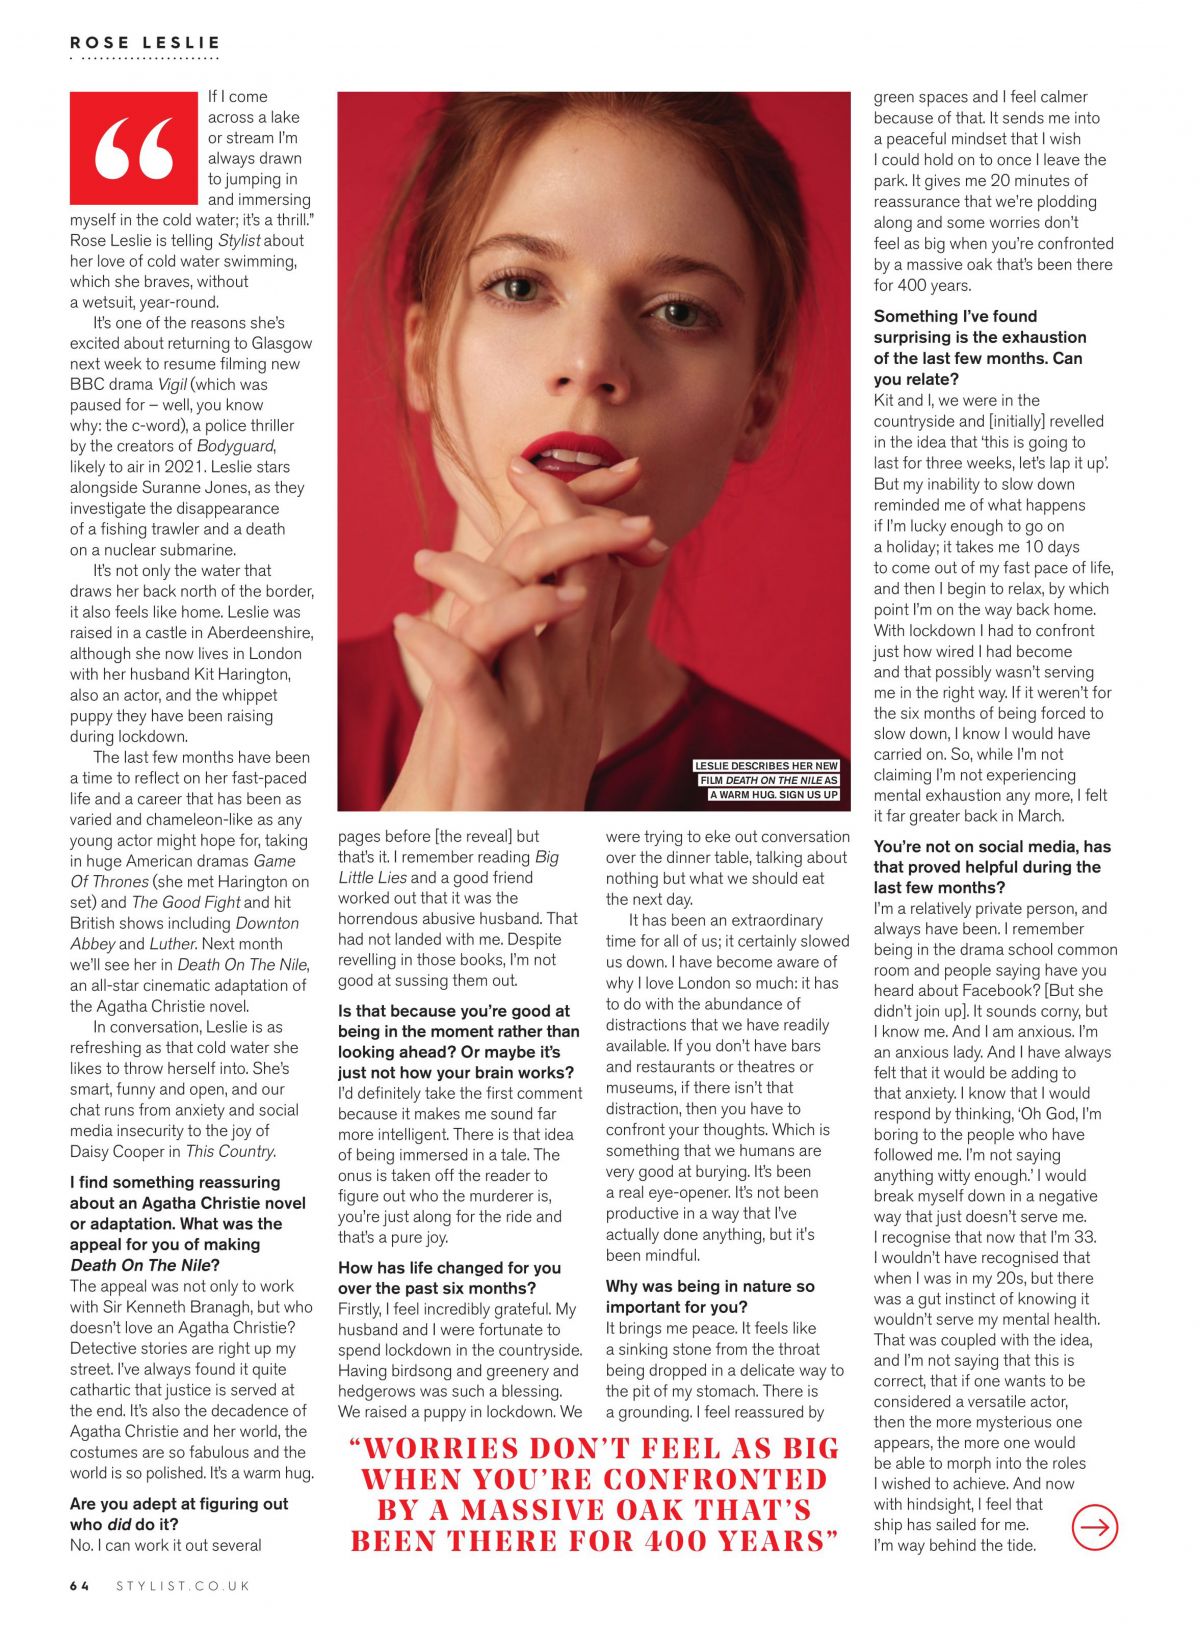 rose-leslie-in-stylist-magazine-september-2020-1.jpg